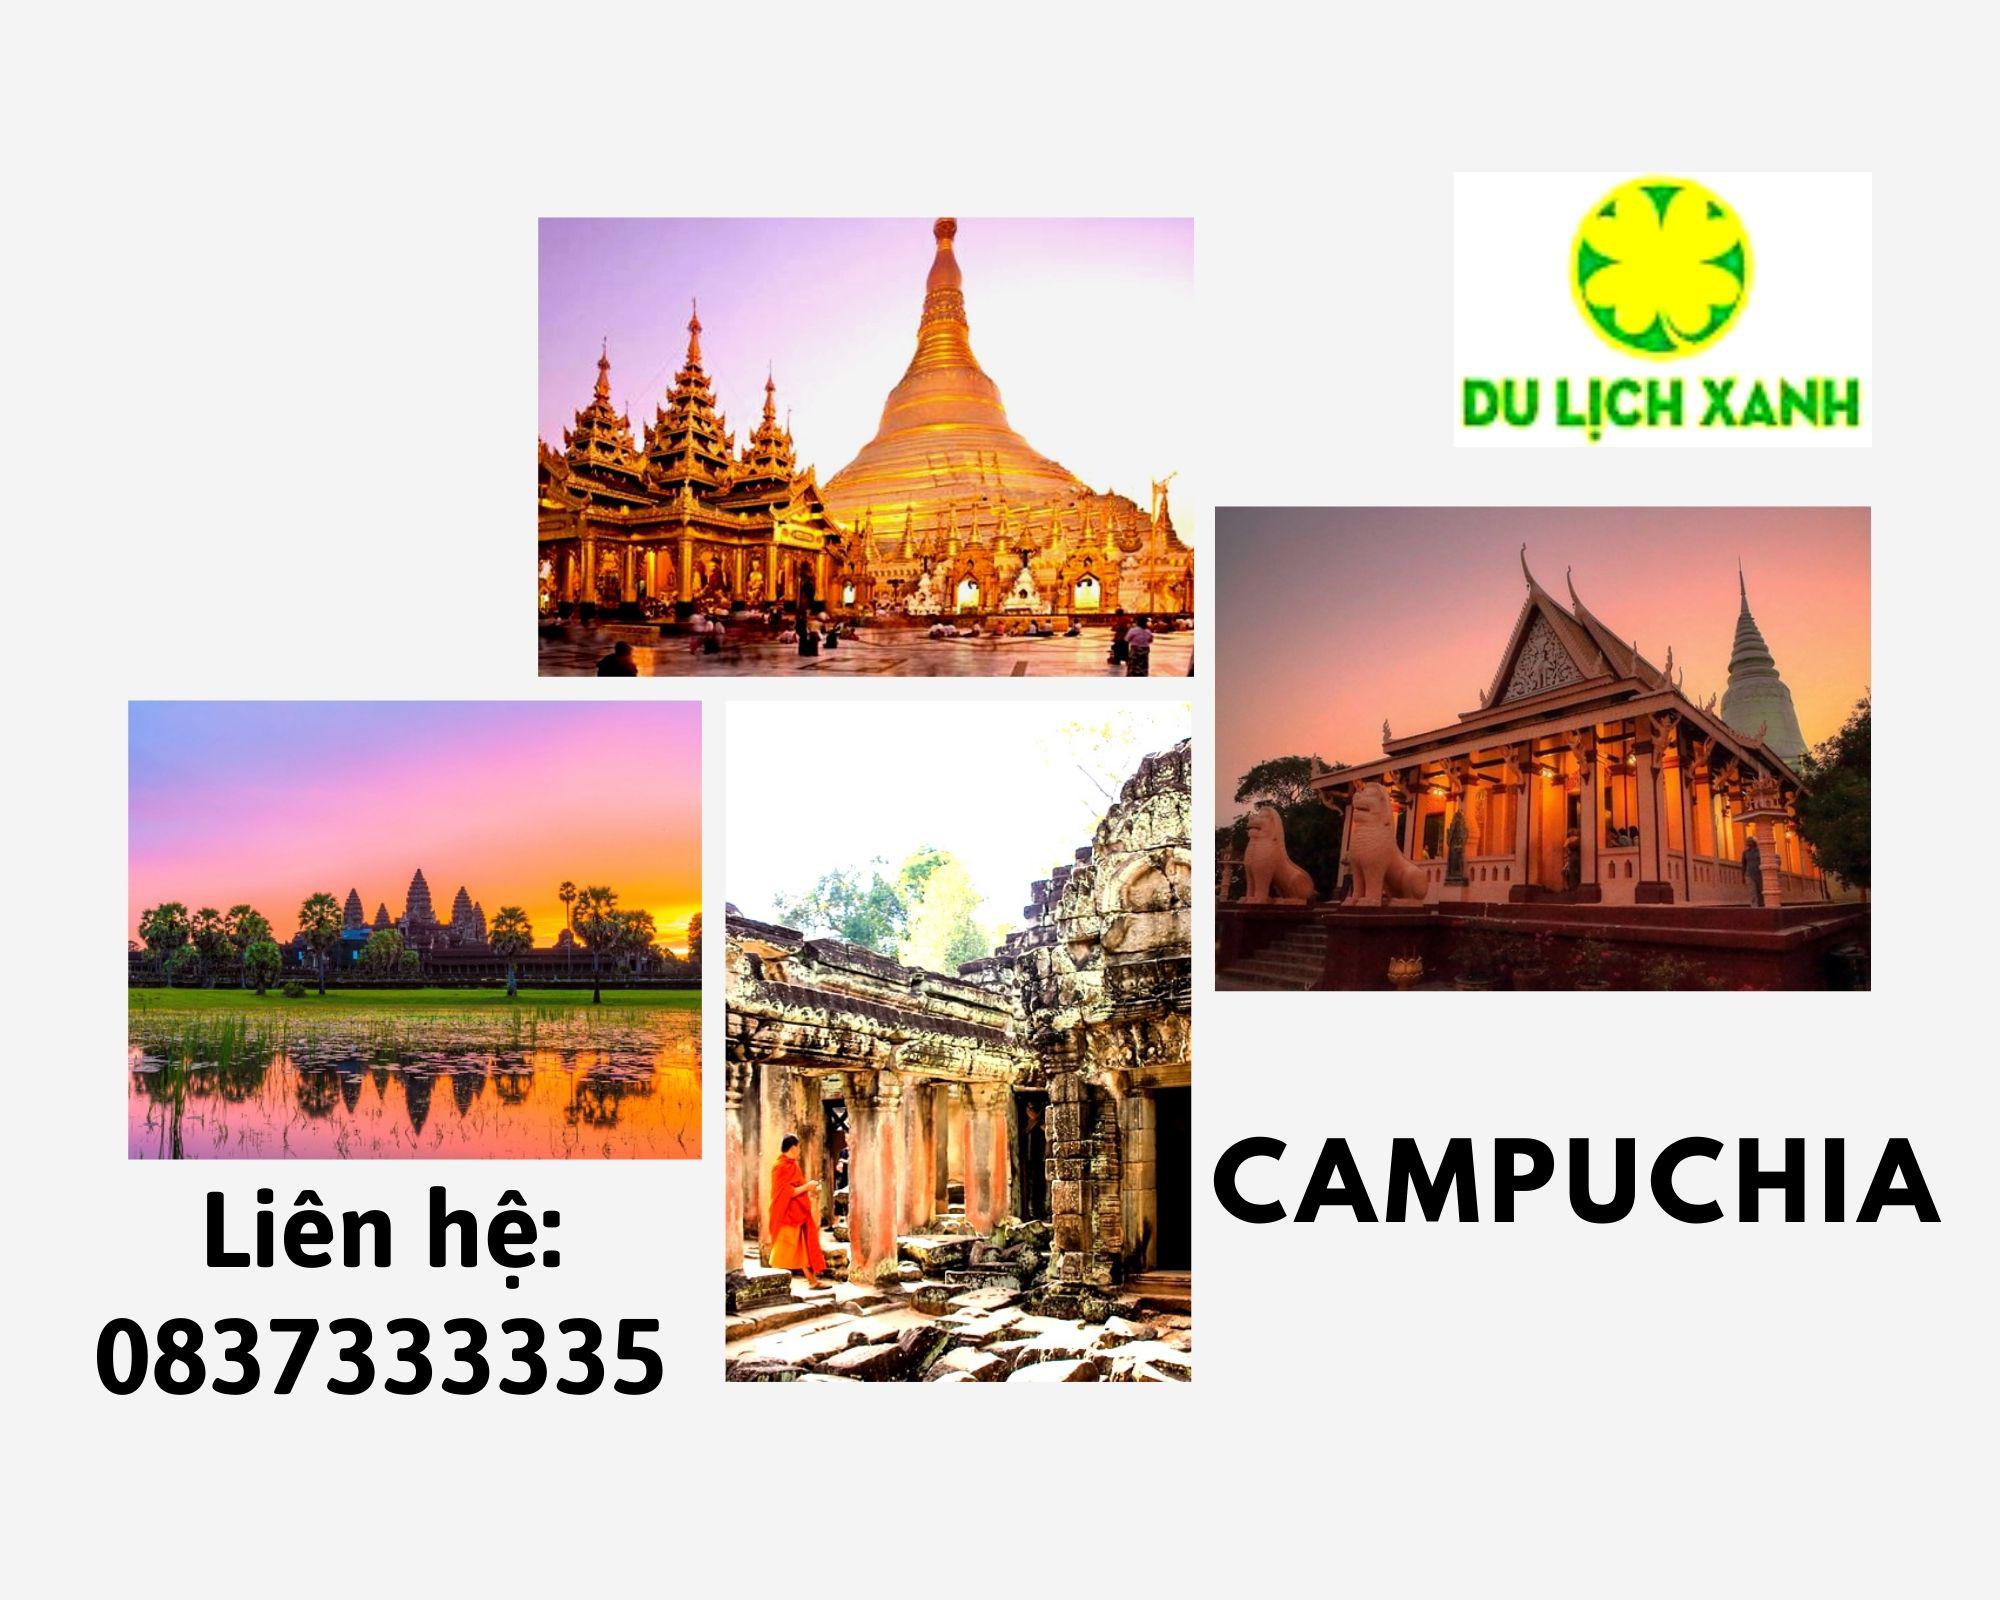 Tour du lịch Campuchia - Siêm Riệp - Phnompenh giá tốt | KH từ Hà Nội